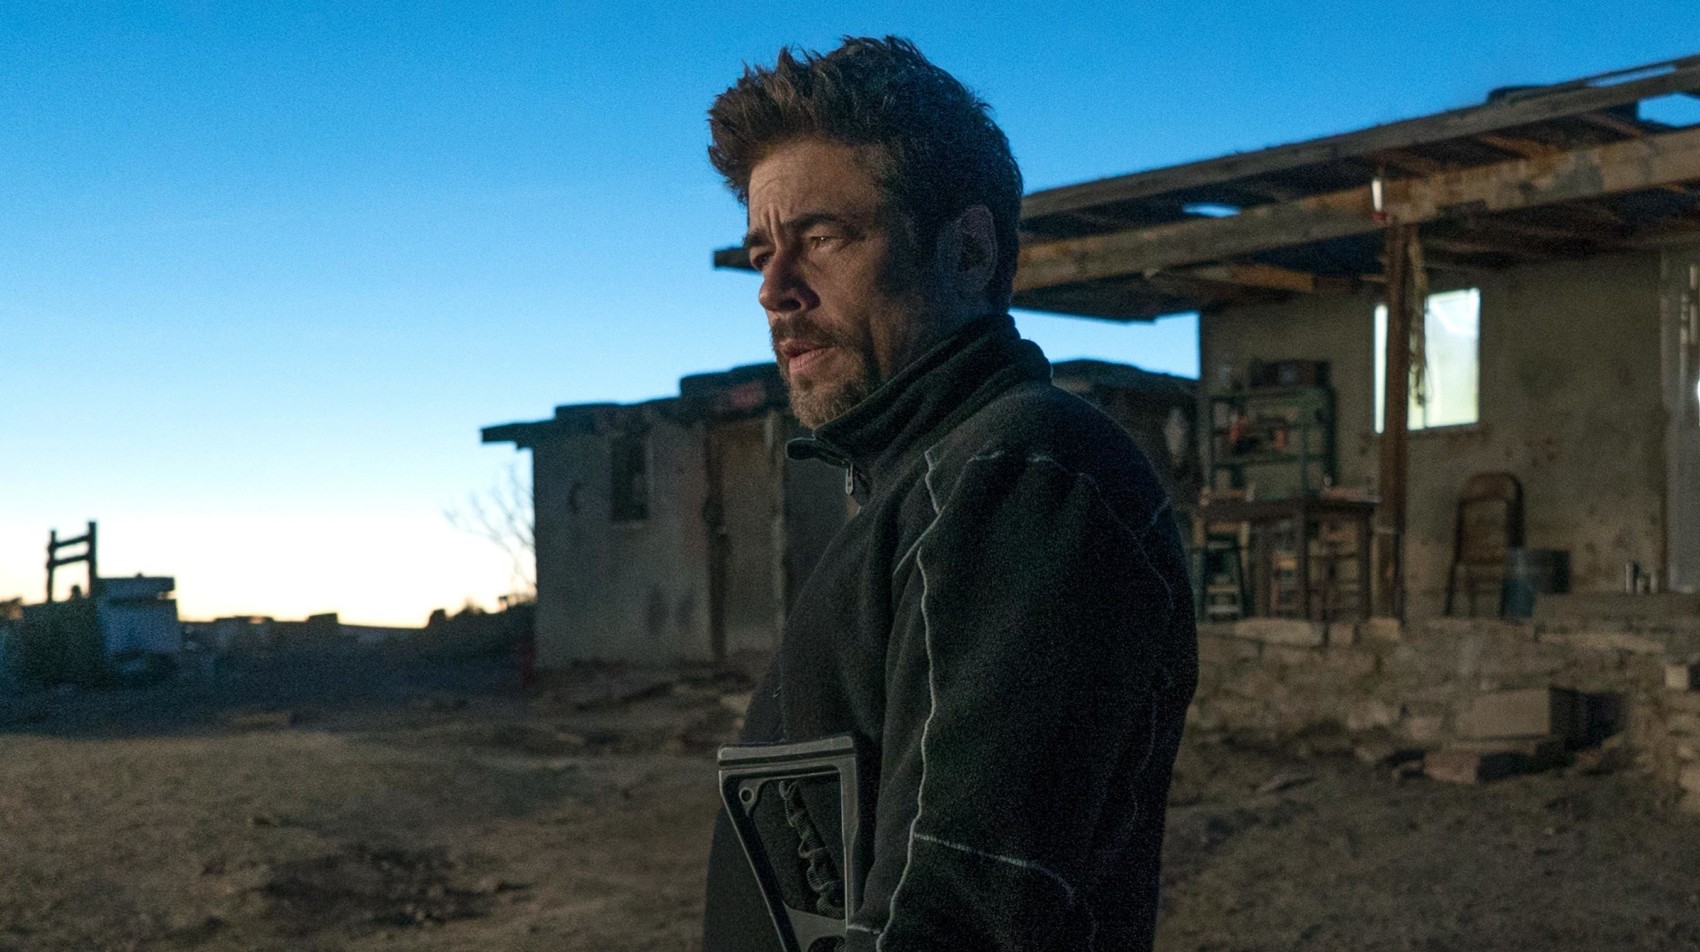 Benicio Del Toro in SICARIO: Day of the Soldado